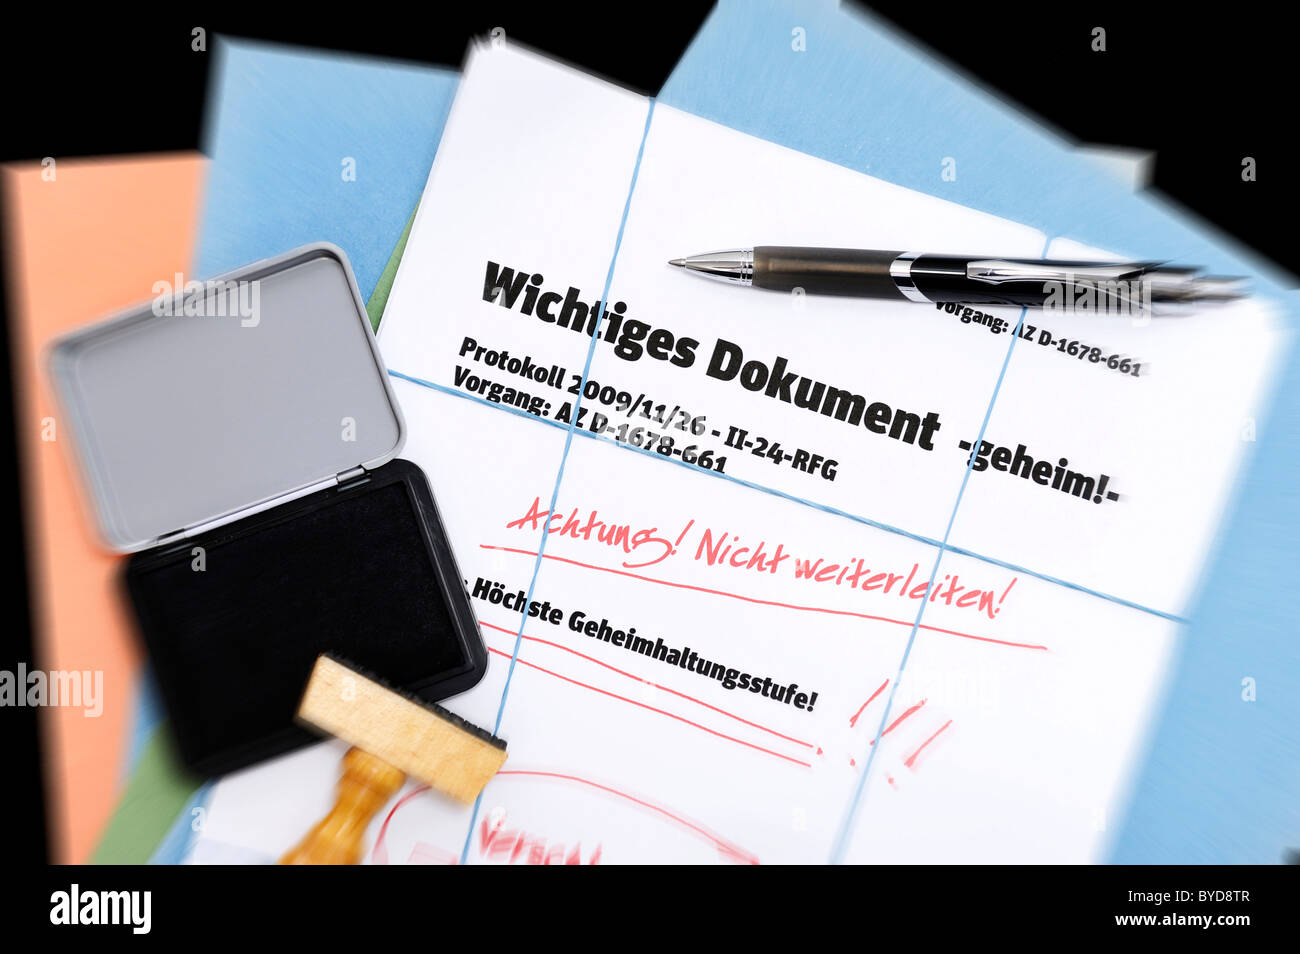 Papiere, Schriftzug "Wichtiges Dokument", Deutsch für "wichtiges Dokument" symbolisches Bild für geheime Dokumente Stockfoto